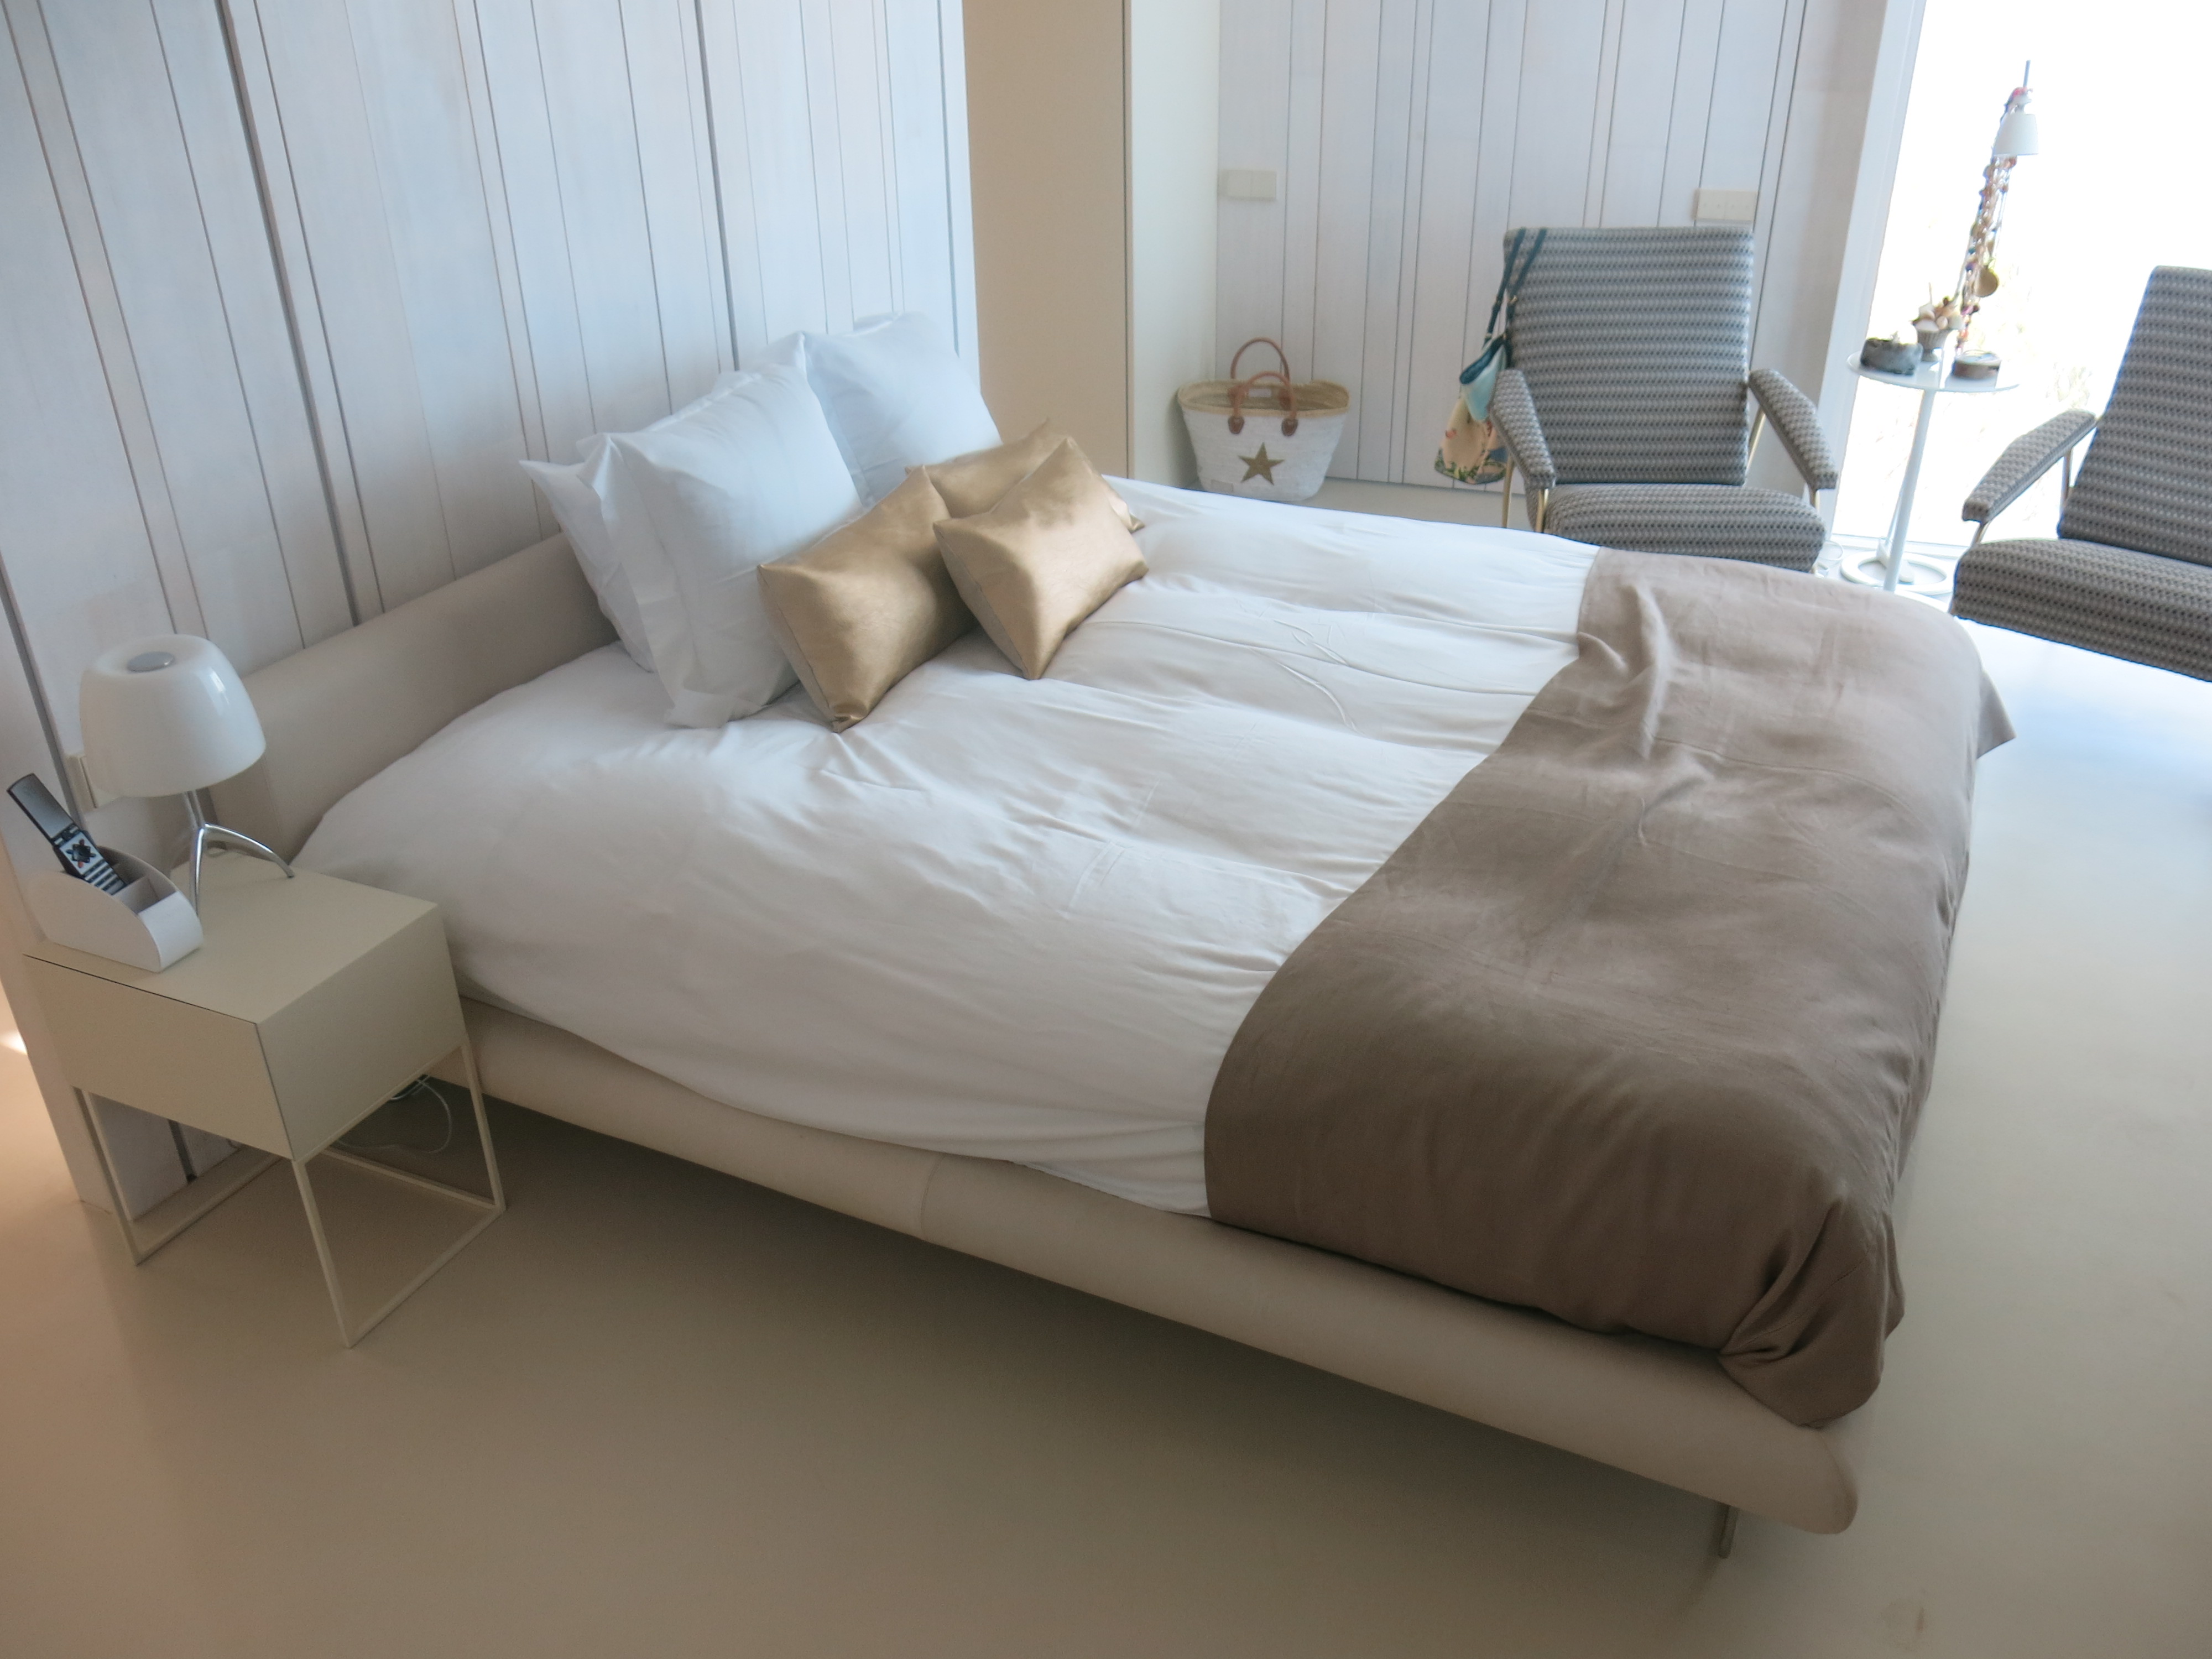 Camera da letto in microcemento Avorio su pavimento radiante